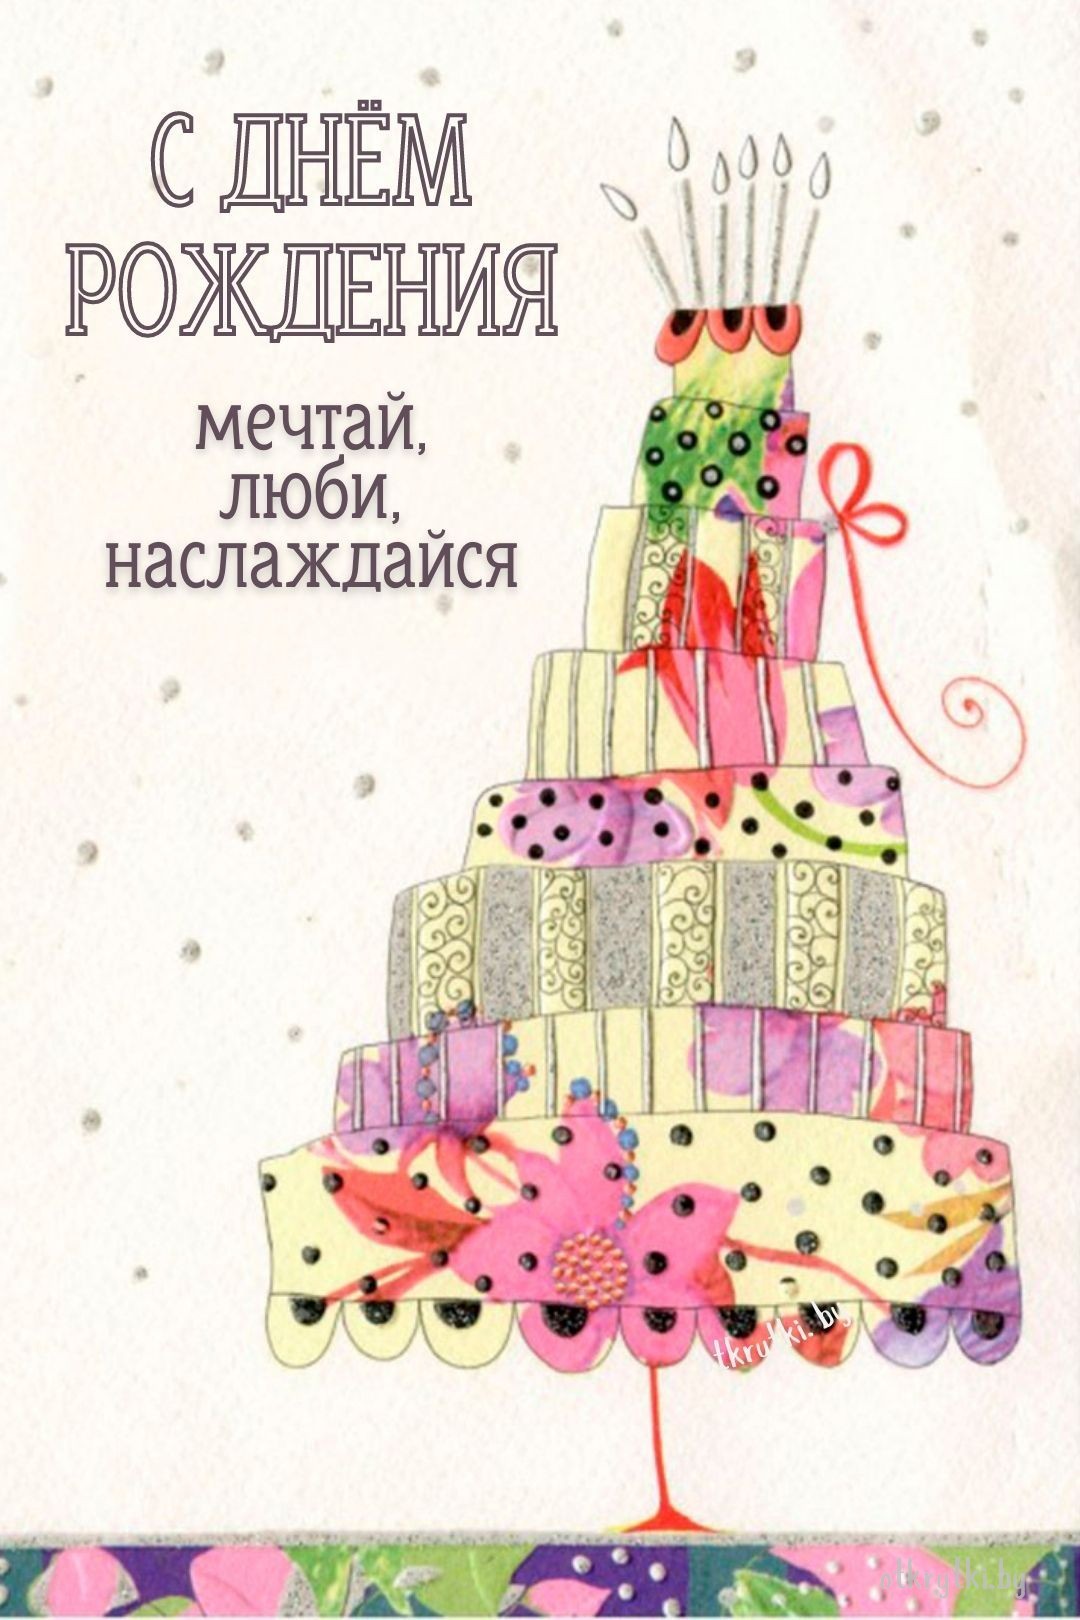 Картинка с днем рождения с тортом